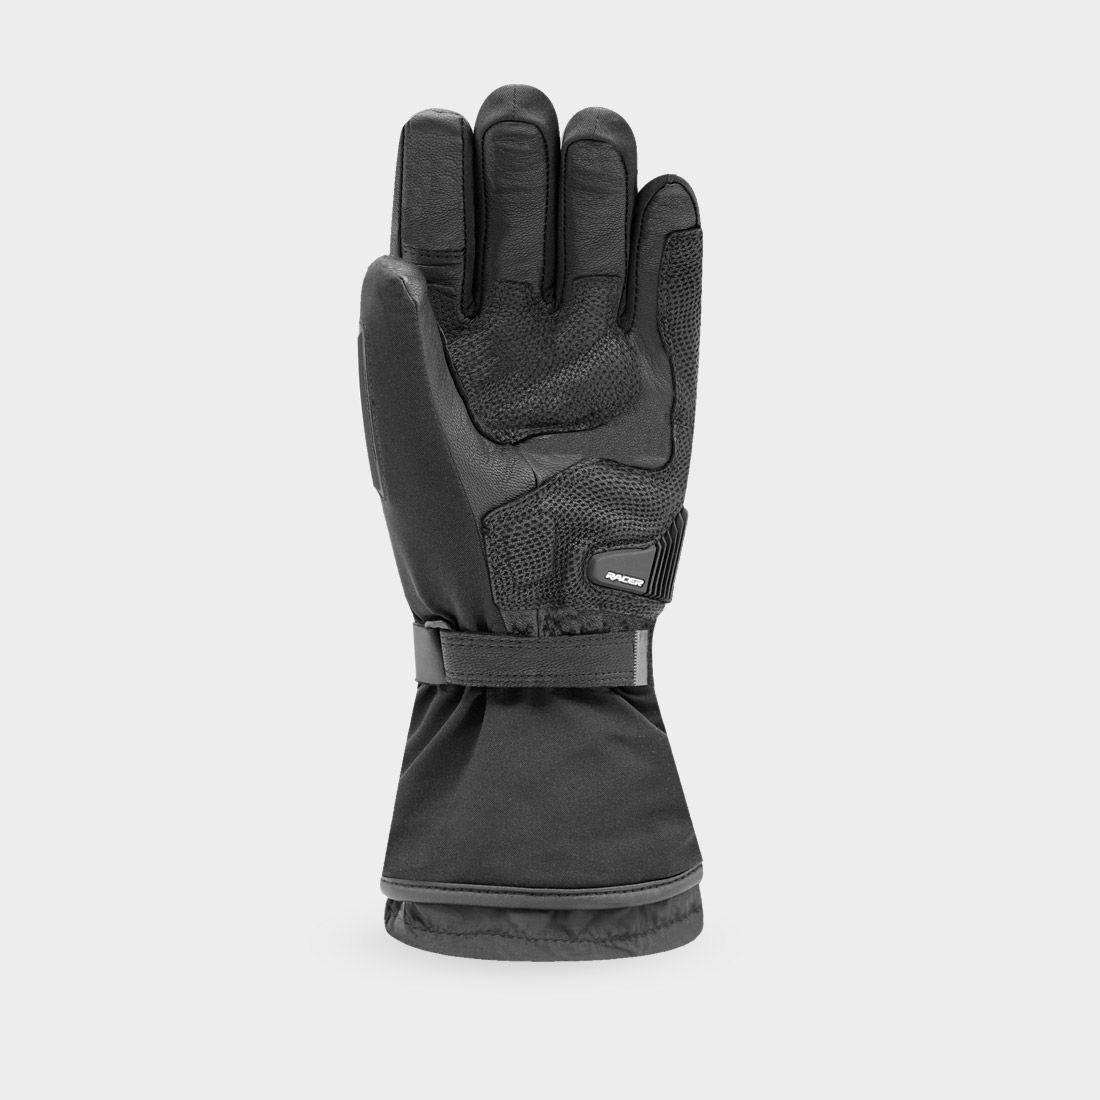 HEAT 4 - Men's motorcycle heated gloves